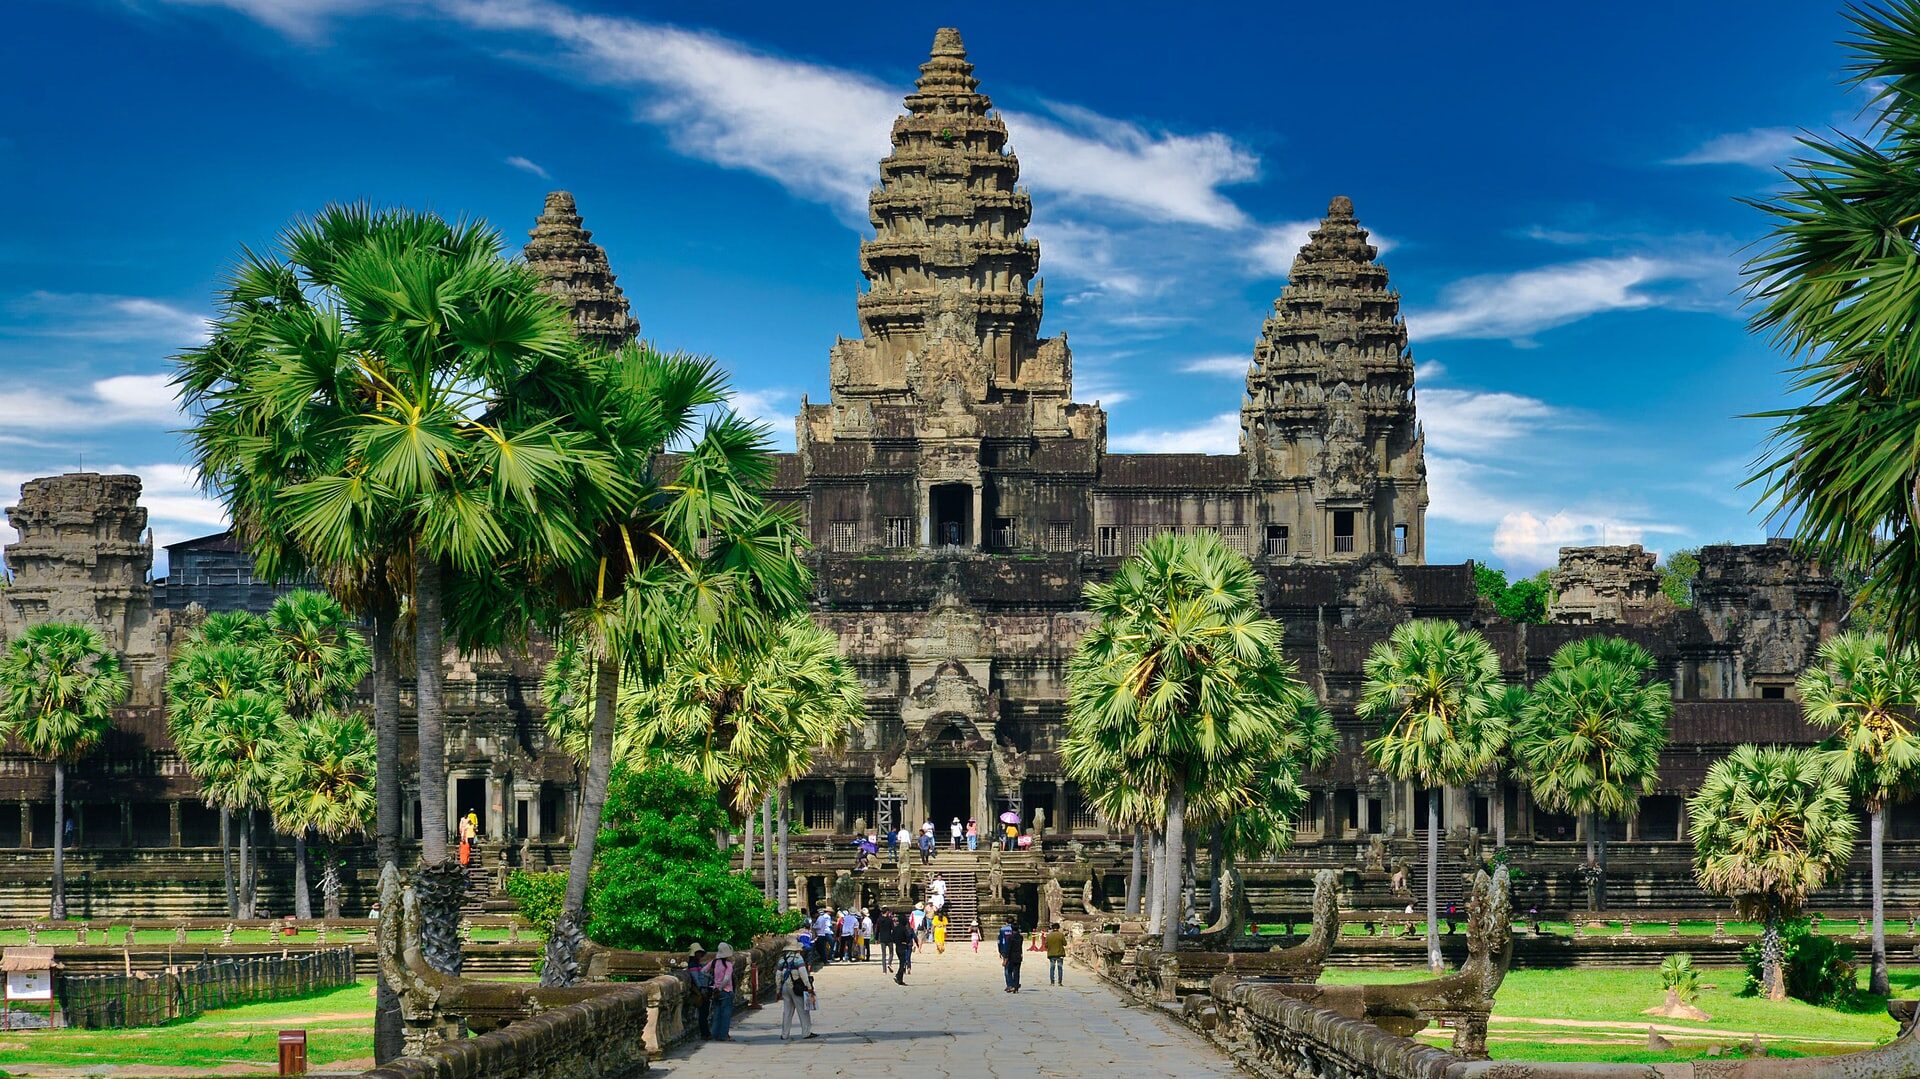 Angkor Wat, Krong Siem Reap, Cambodia